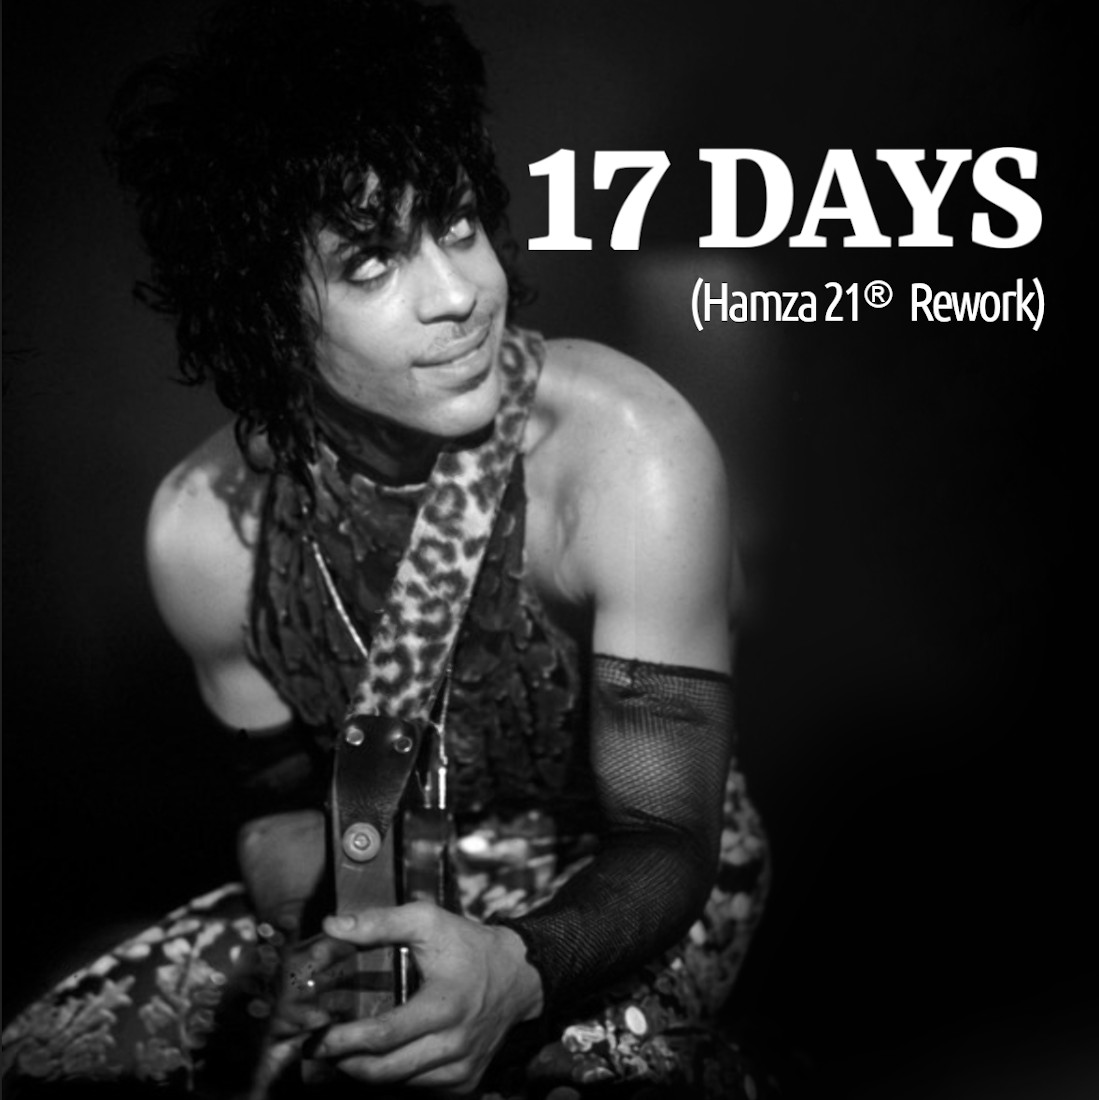 Prince – 17 Days (Hamza 21 ReWork)